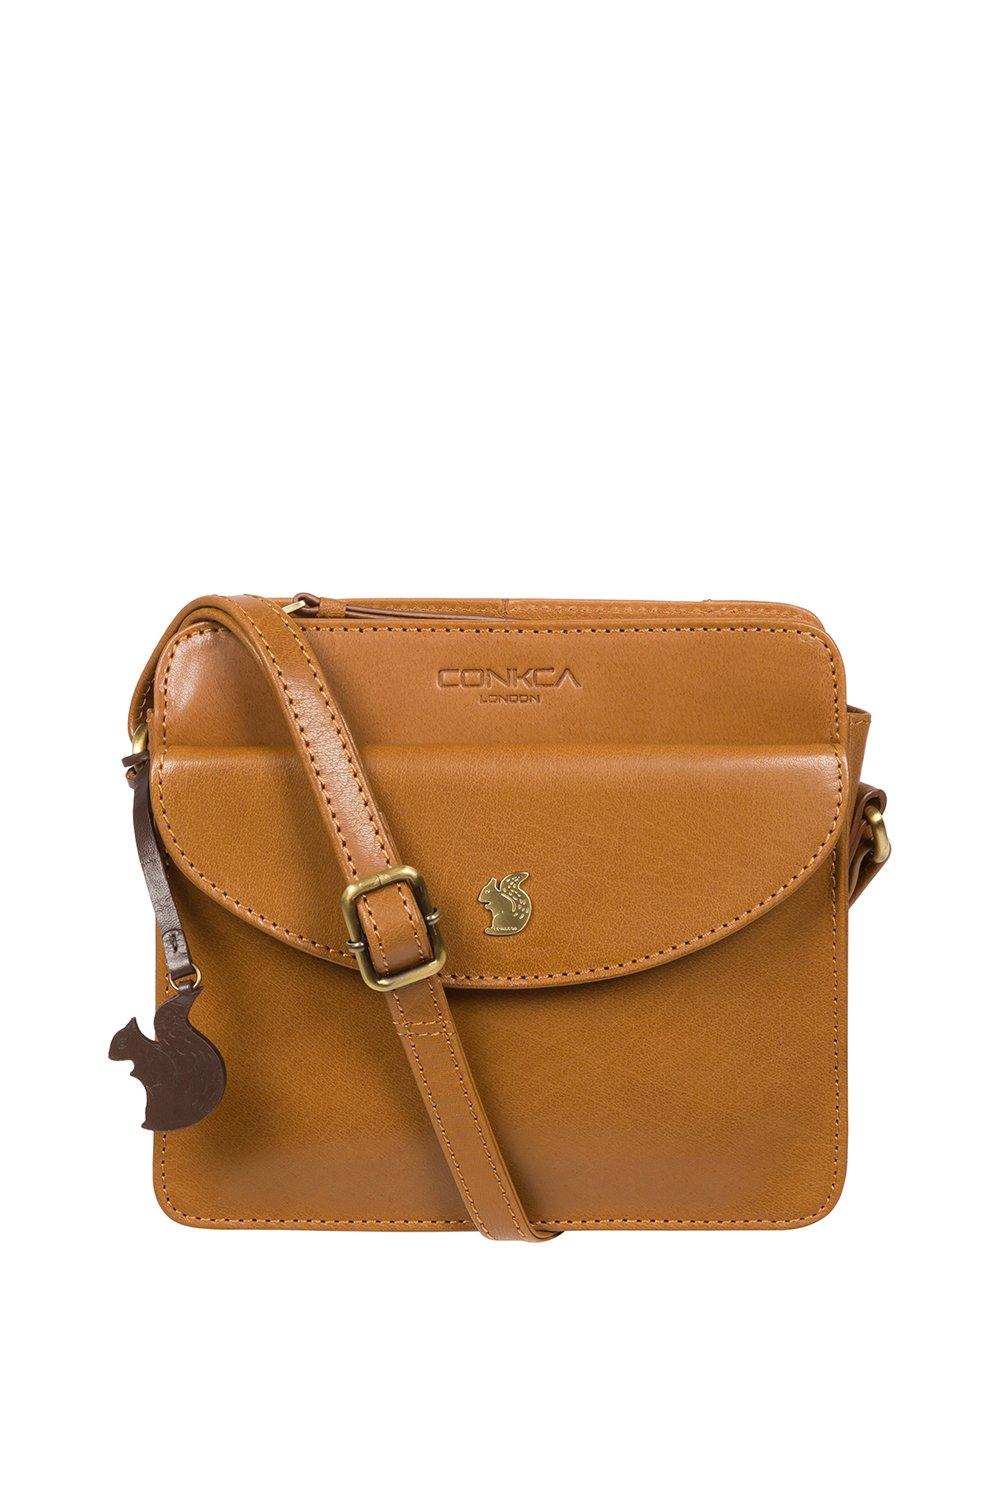 Кожаная сумка через плечо 'Magda' Conkca London, коричневый платье magda с карманами 46 размер новое